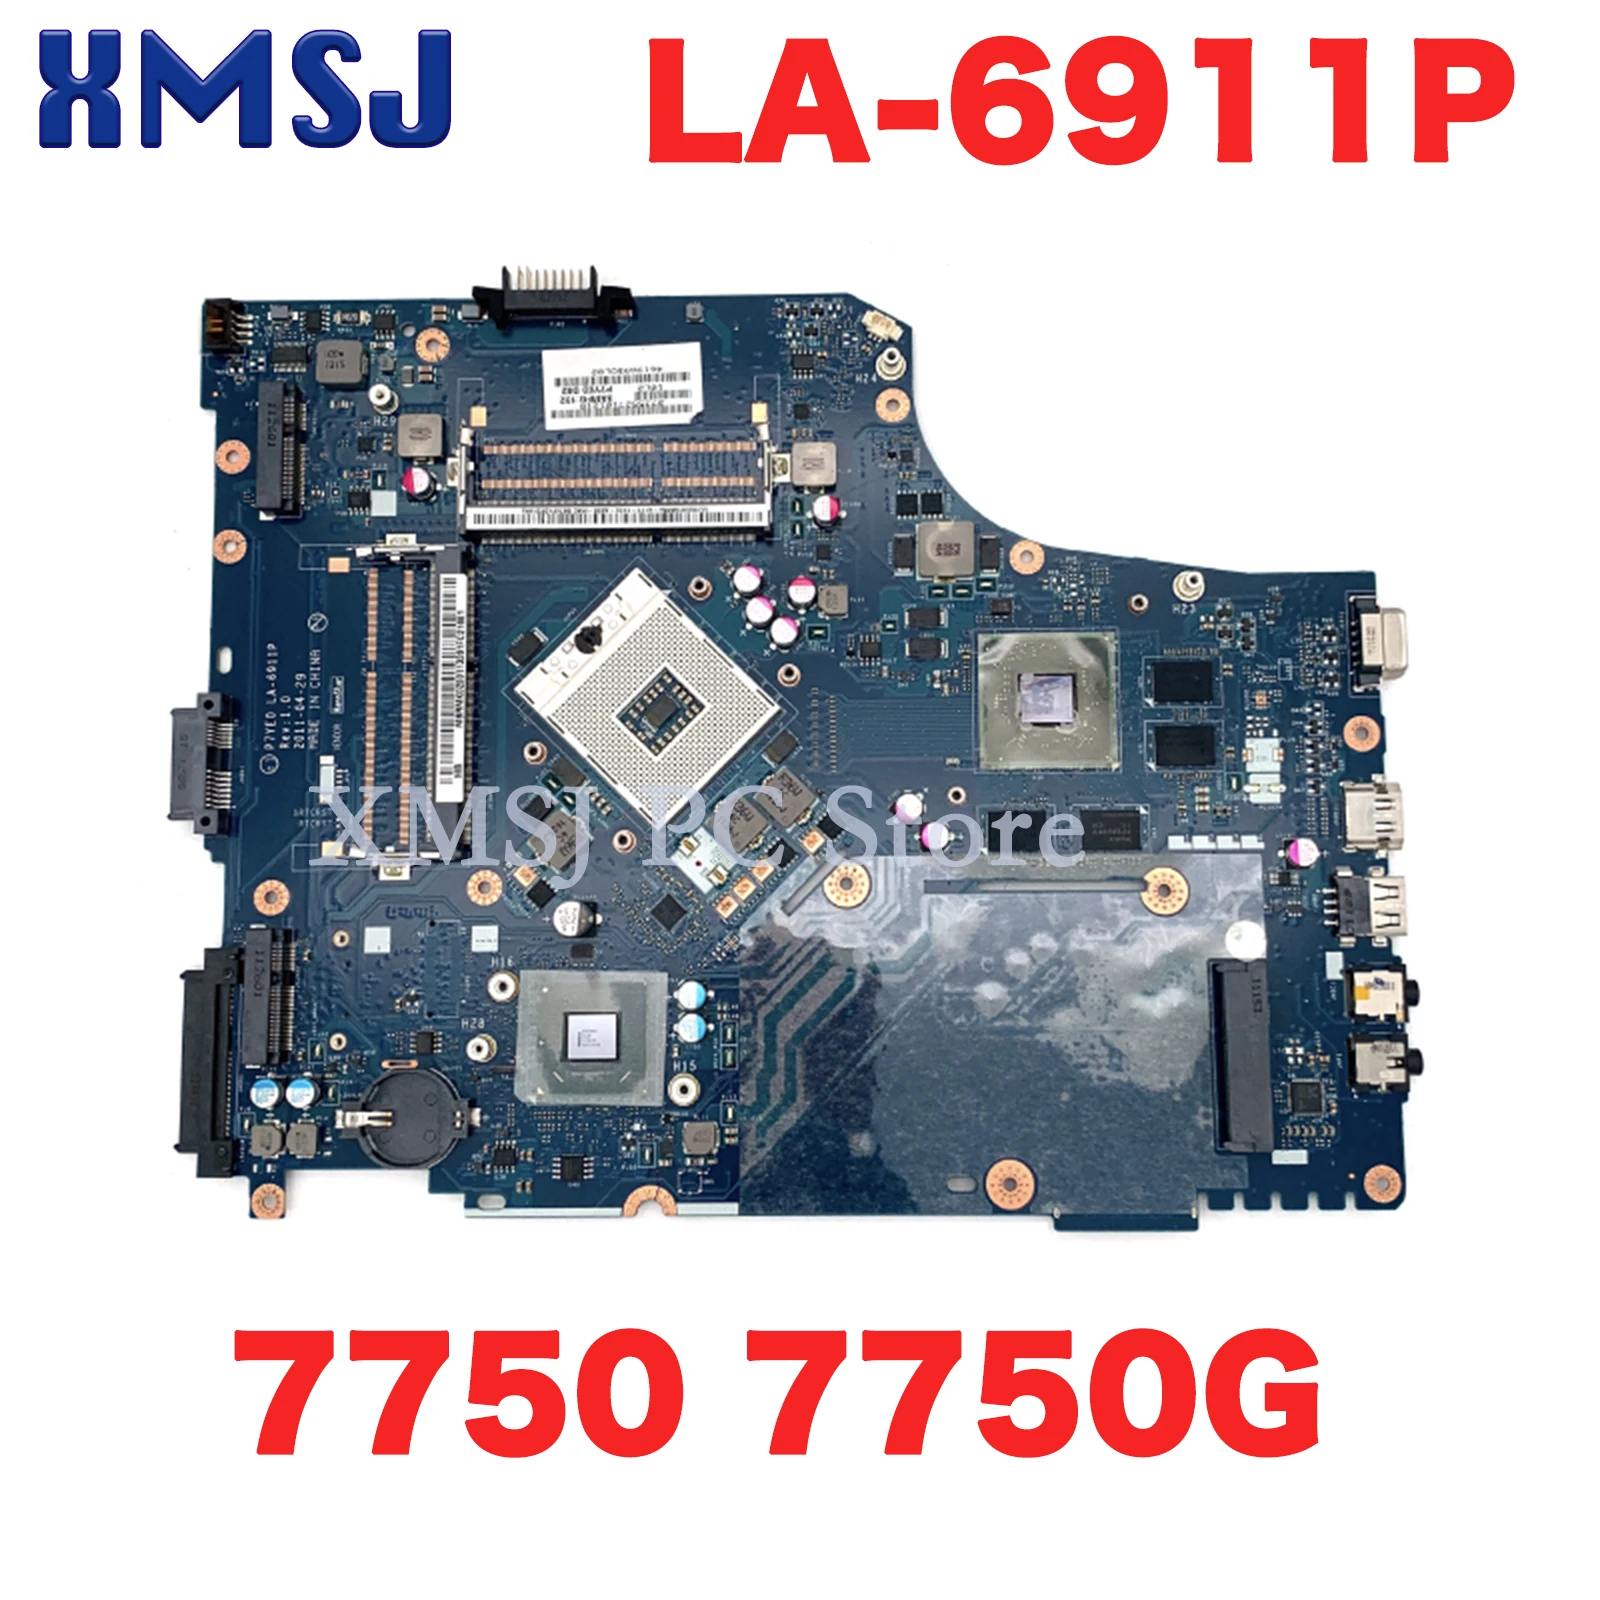 

XMSJ For Acer Aspire 7750 7750G P7YE0 LA-6911P MBRMK02001 MBBYR02001 NBV5E11001 MBRCZ02002 HD 6630M HM65 DDR3 Full Test